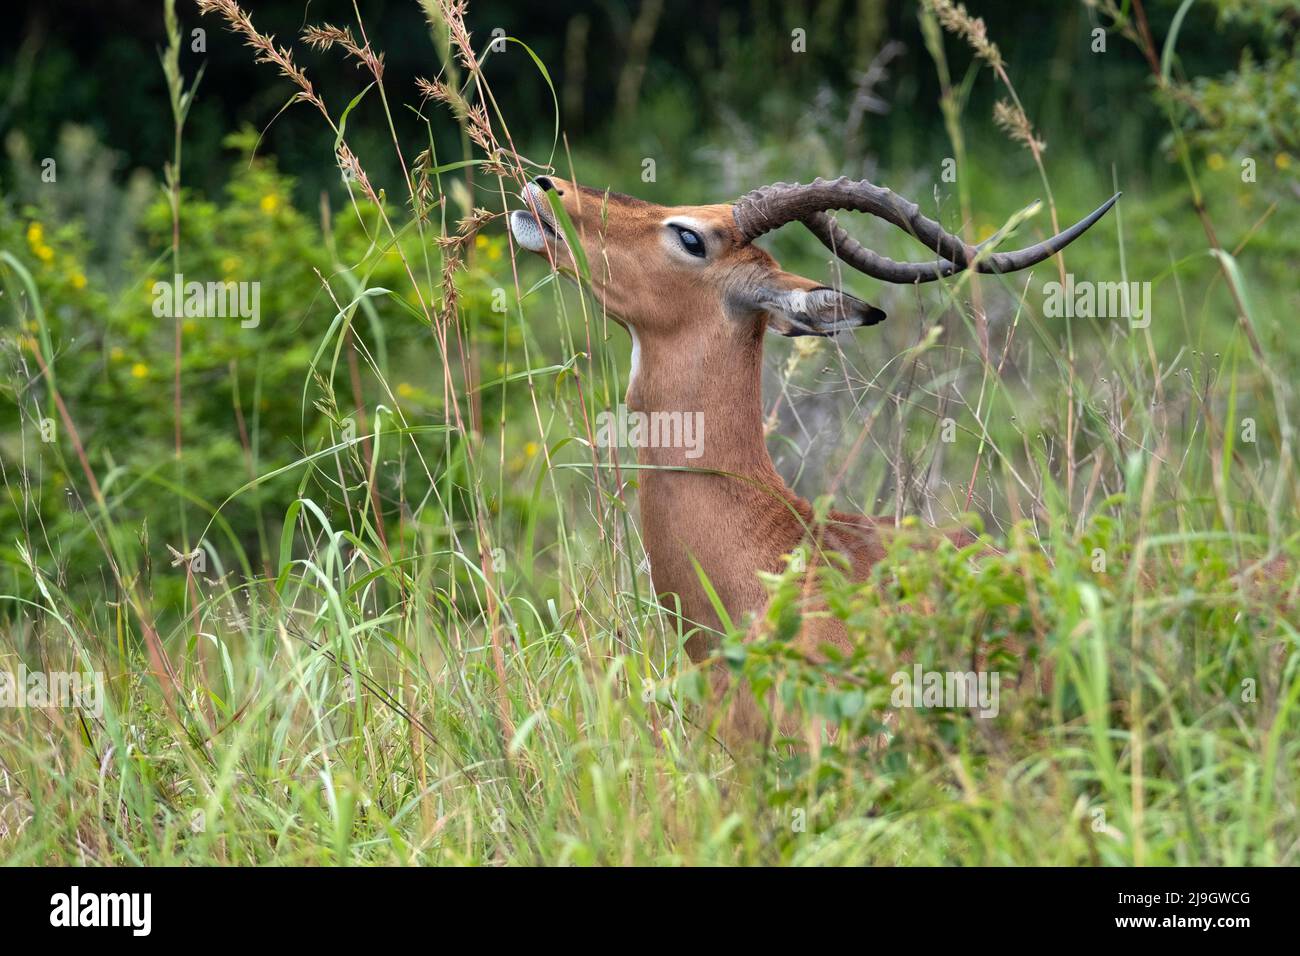 Impala masculina (Aepyceros melampus) comiendo pasto en el Parque de Humedales iSimangaliso, KwaZulu-Natal, Sudáfrica Foto de stock